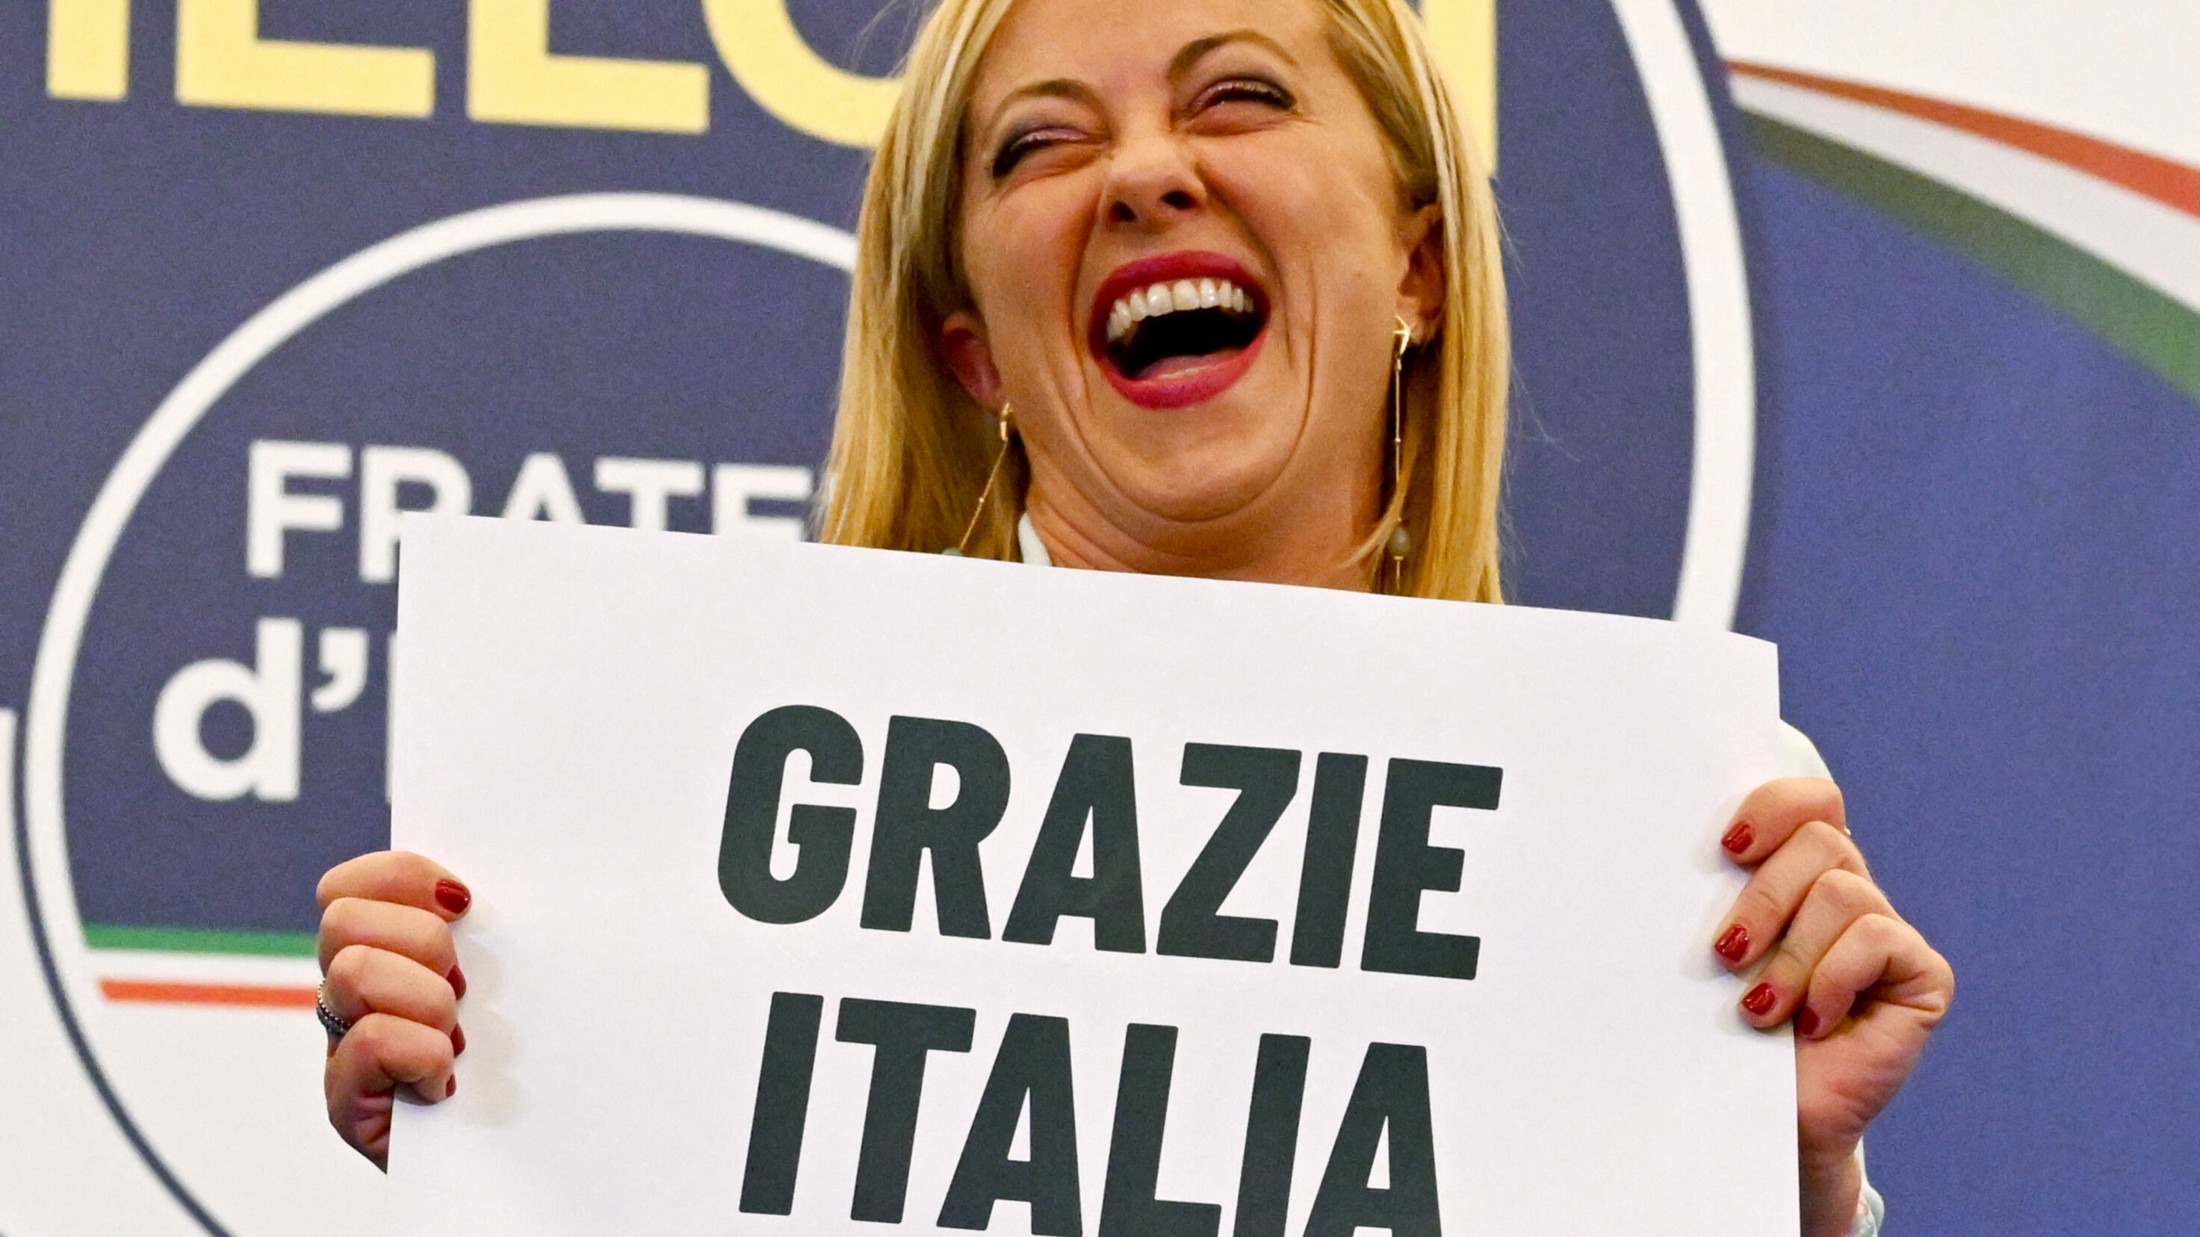 جورجيا ميلوني - حزب أخوة إيطاليا